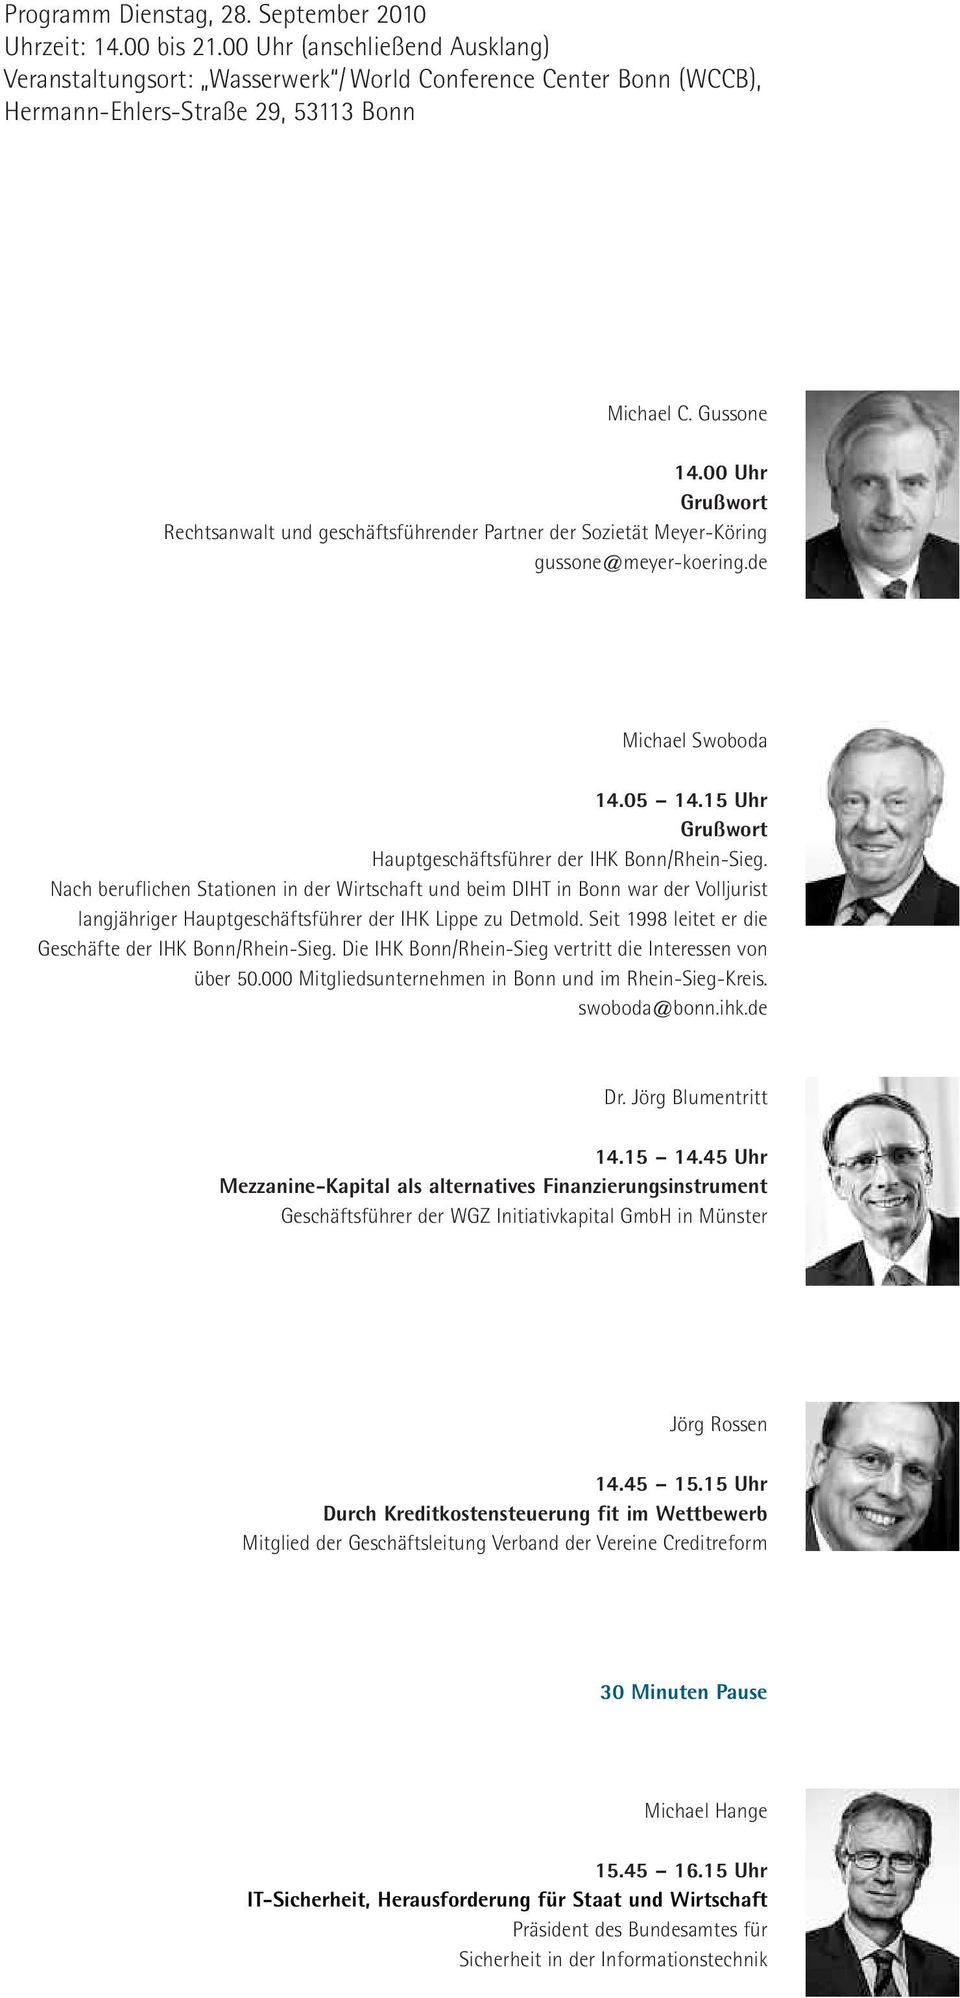 00 Uhr Grußwort Rechtsanwalt und geschäftsführender Partner der Sozietät Meyer-Köring gussone@meyer-koering.de Michael Swoboda 14.05 14.15 Uhr Grußwort Hauptgeschäftsführer der IHK Bonn/Rhein-Sieg.